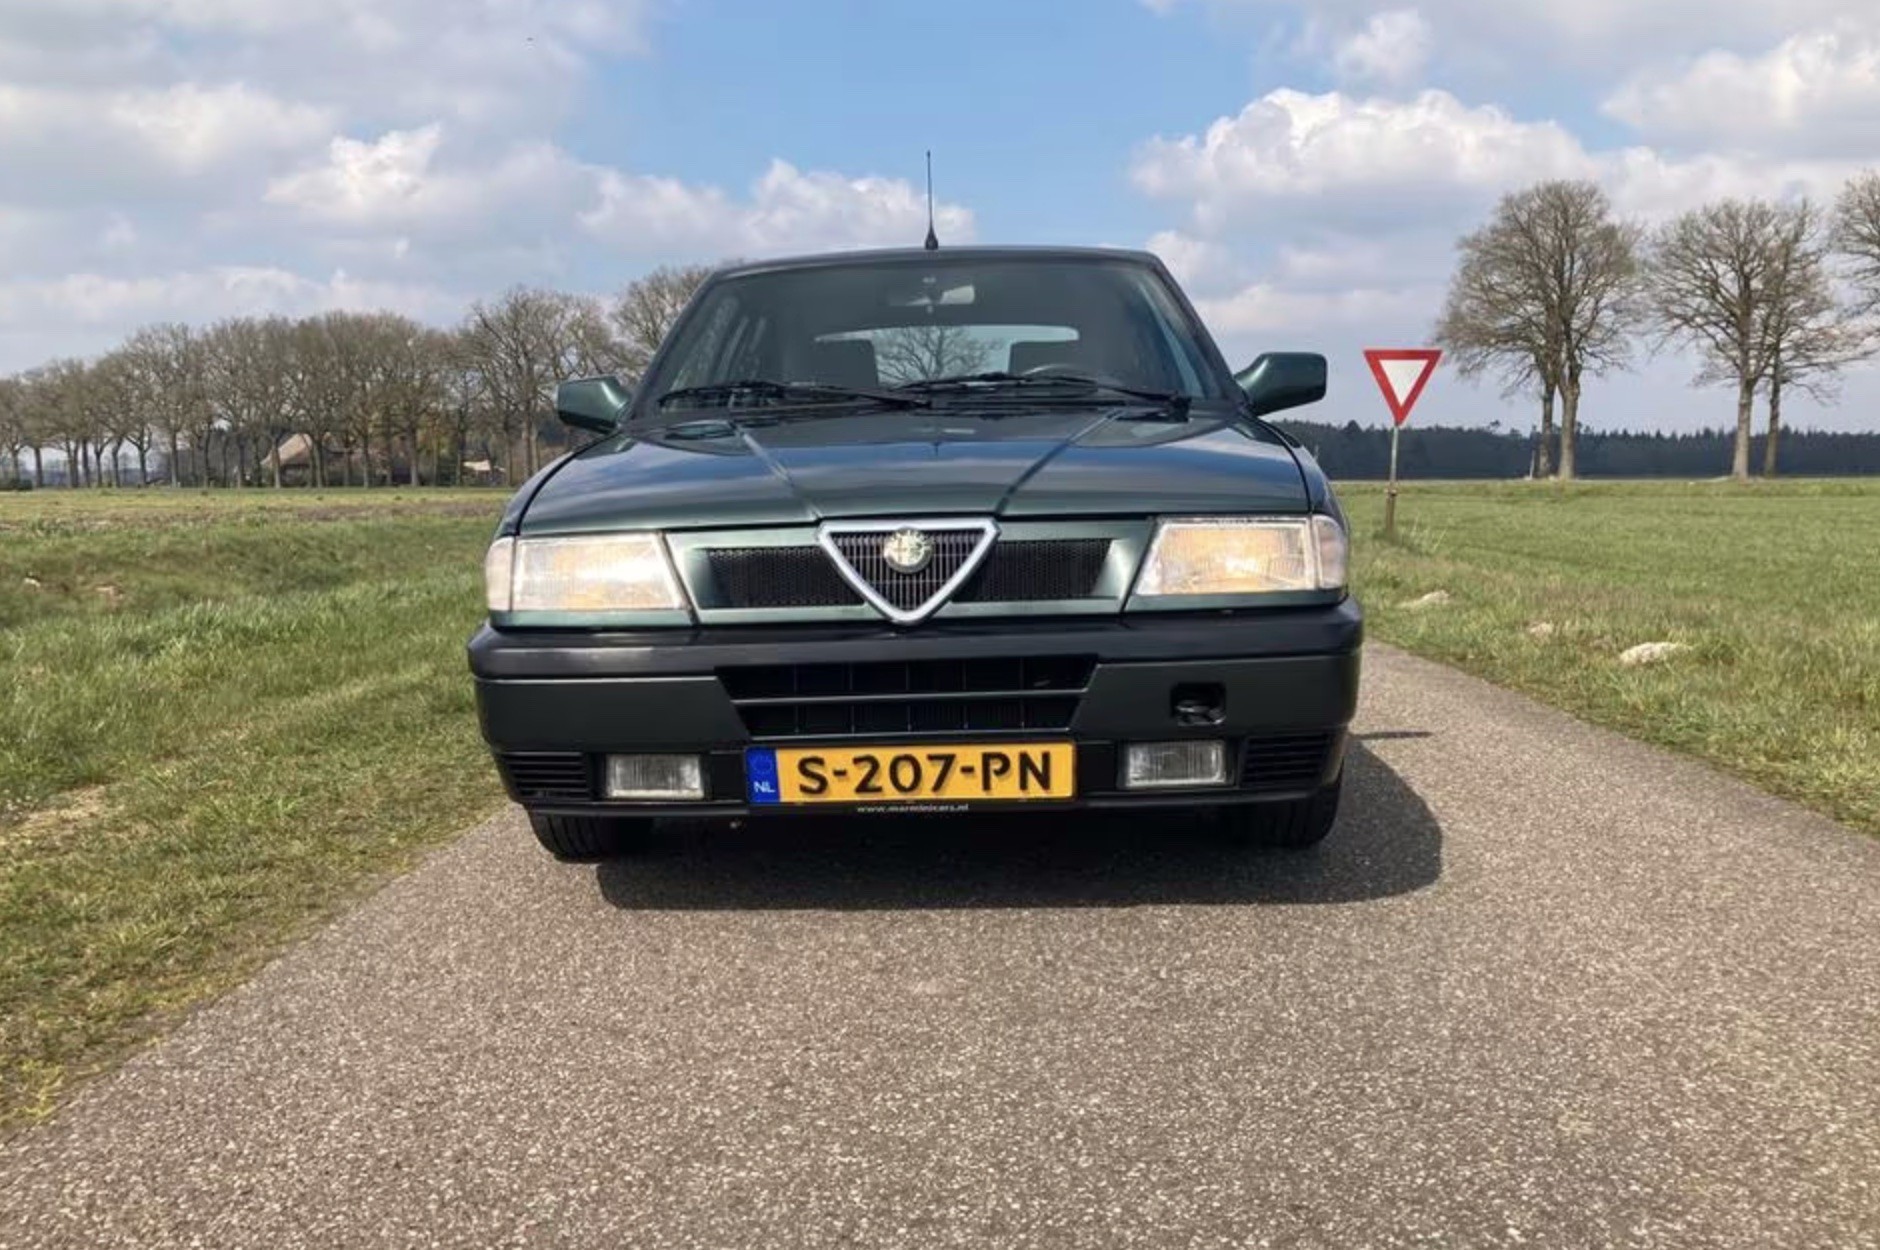 Bevoorrecht Berouw ondergronds Jouw perfecte eerste auto staat gewoon te koop - Autoblog.nl